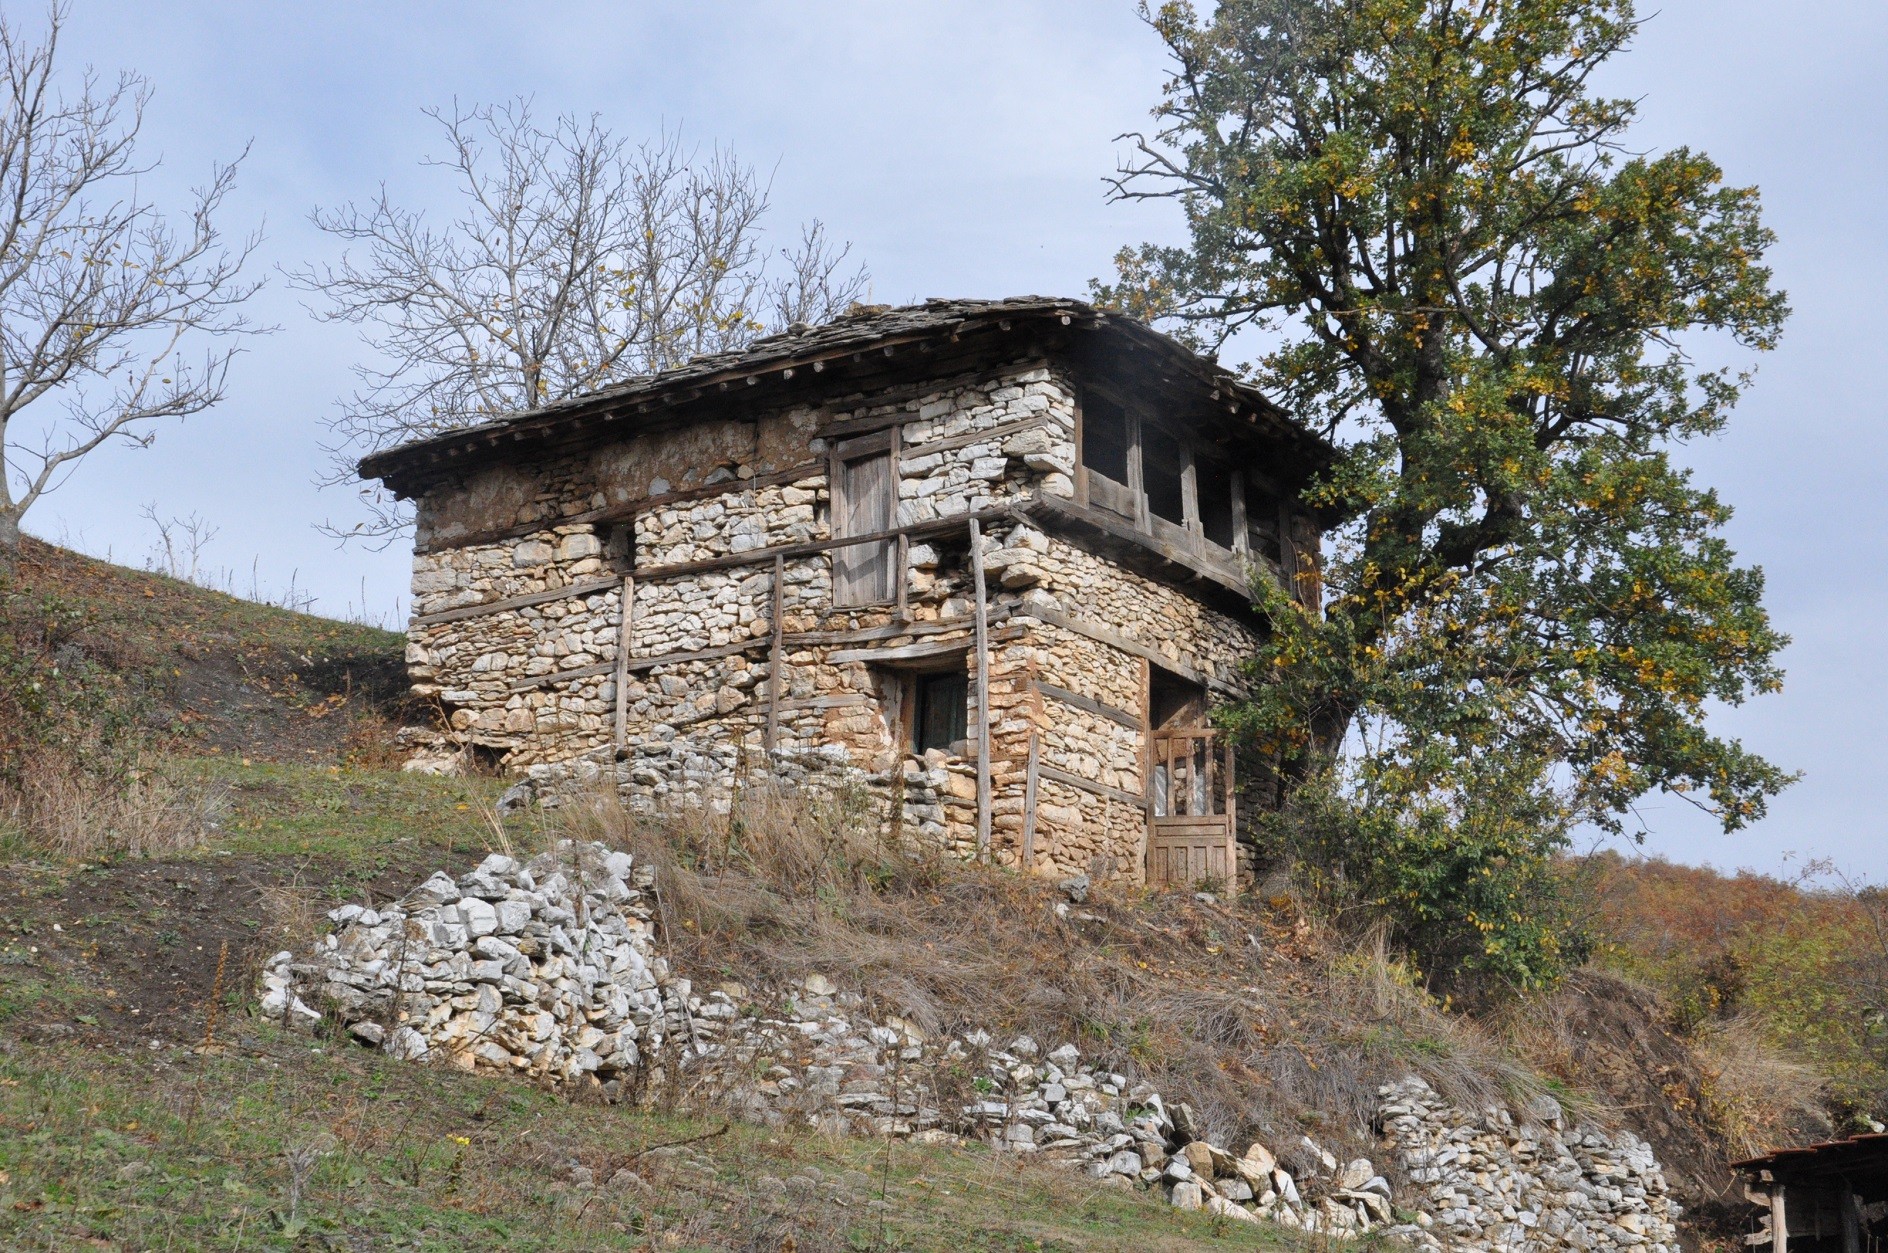 Kulla në fshatin Çadrak i nënshtrohet ndërhyrjeve restauruese konservuese